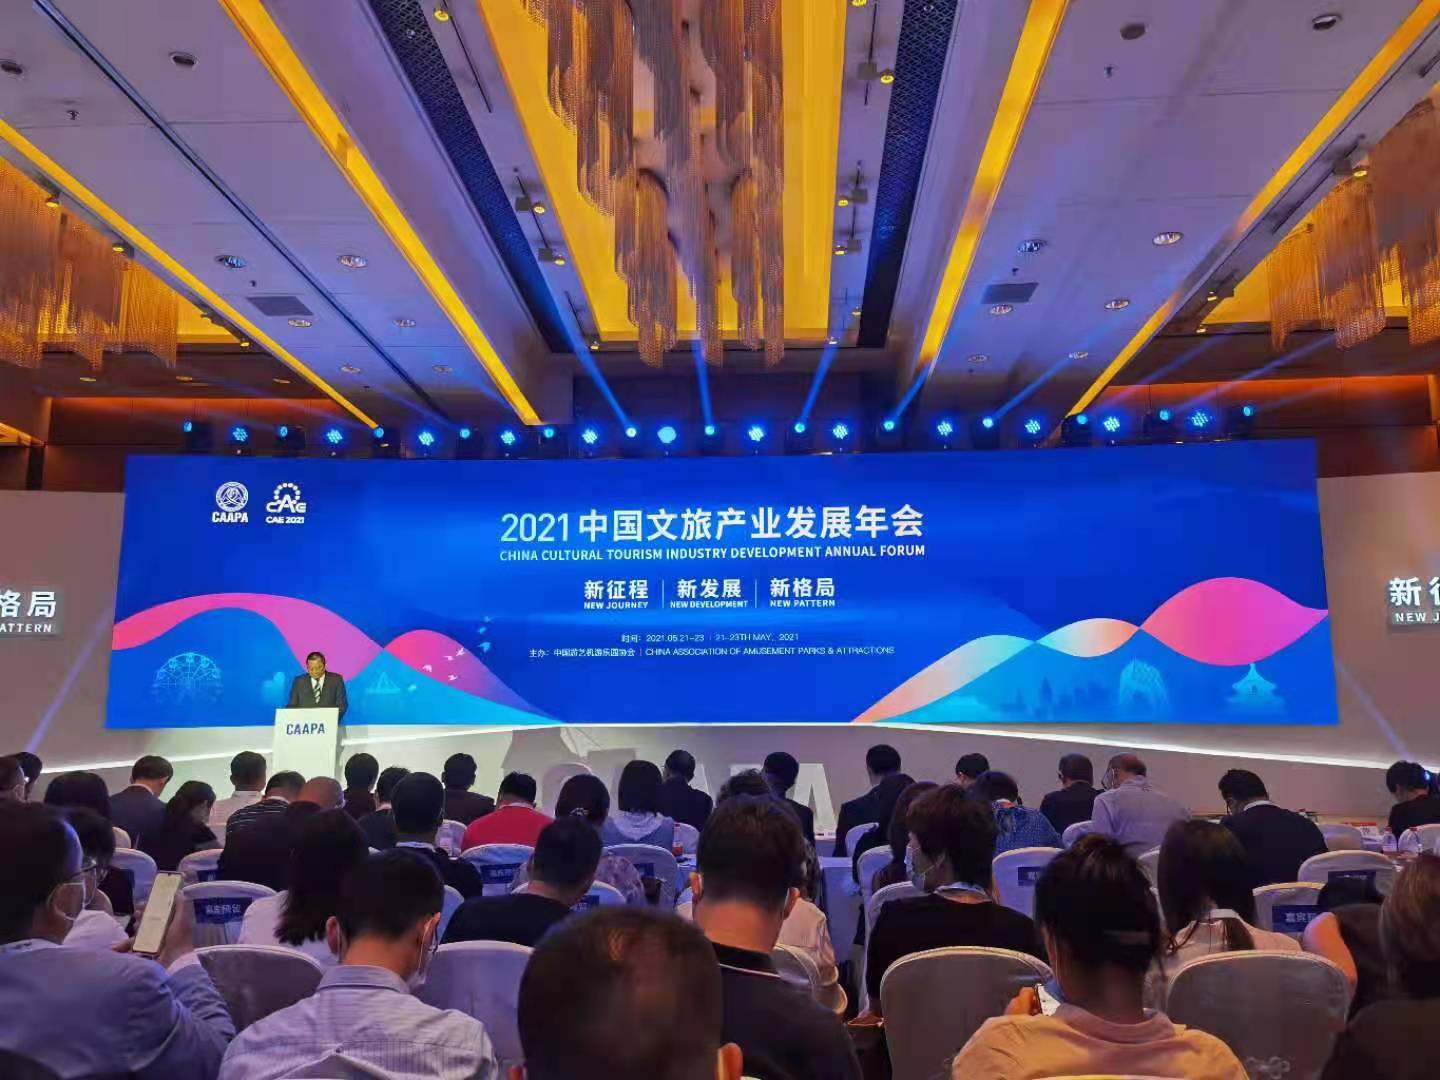 共襄2021中国文旅产业发展年会  洞察文旅行业发展新趋势